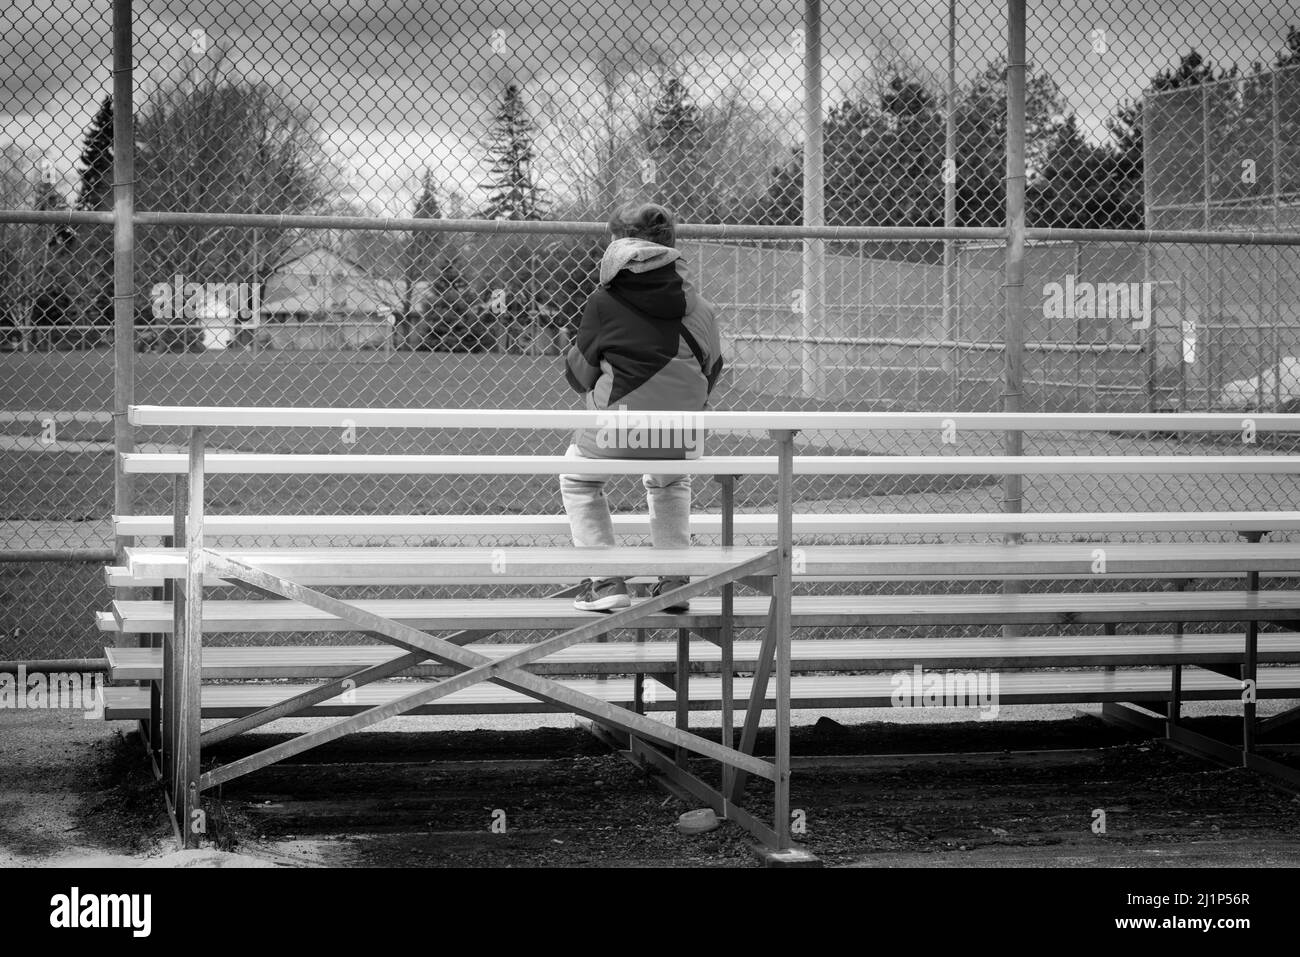 Un jeune garçon assis dans les gradins au diamant de baseball. En attente du début du baseball de la pandémie COVID-19. Banque D'Images